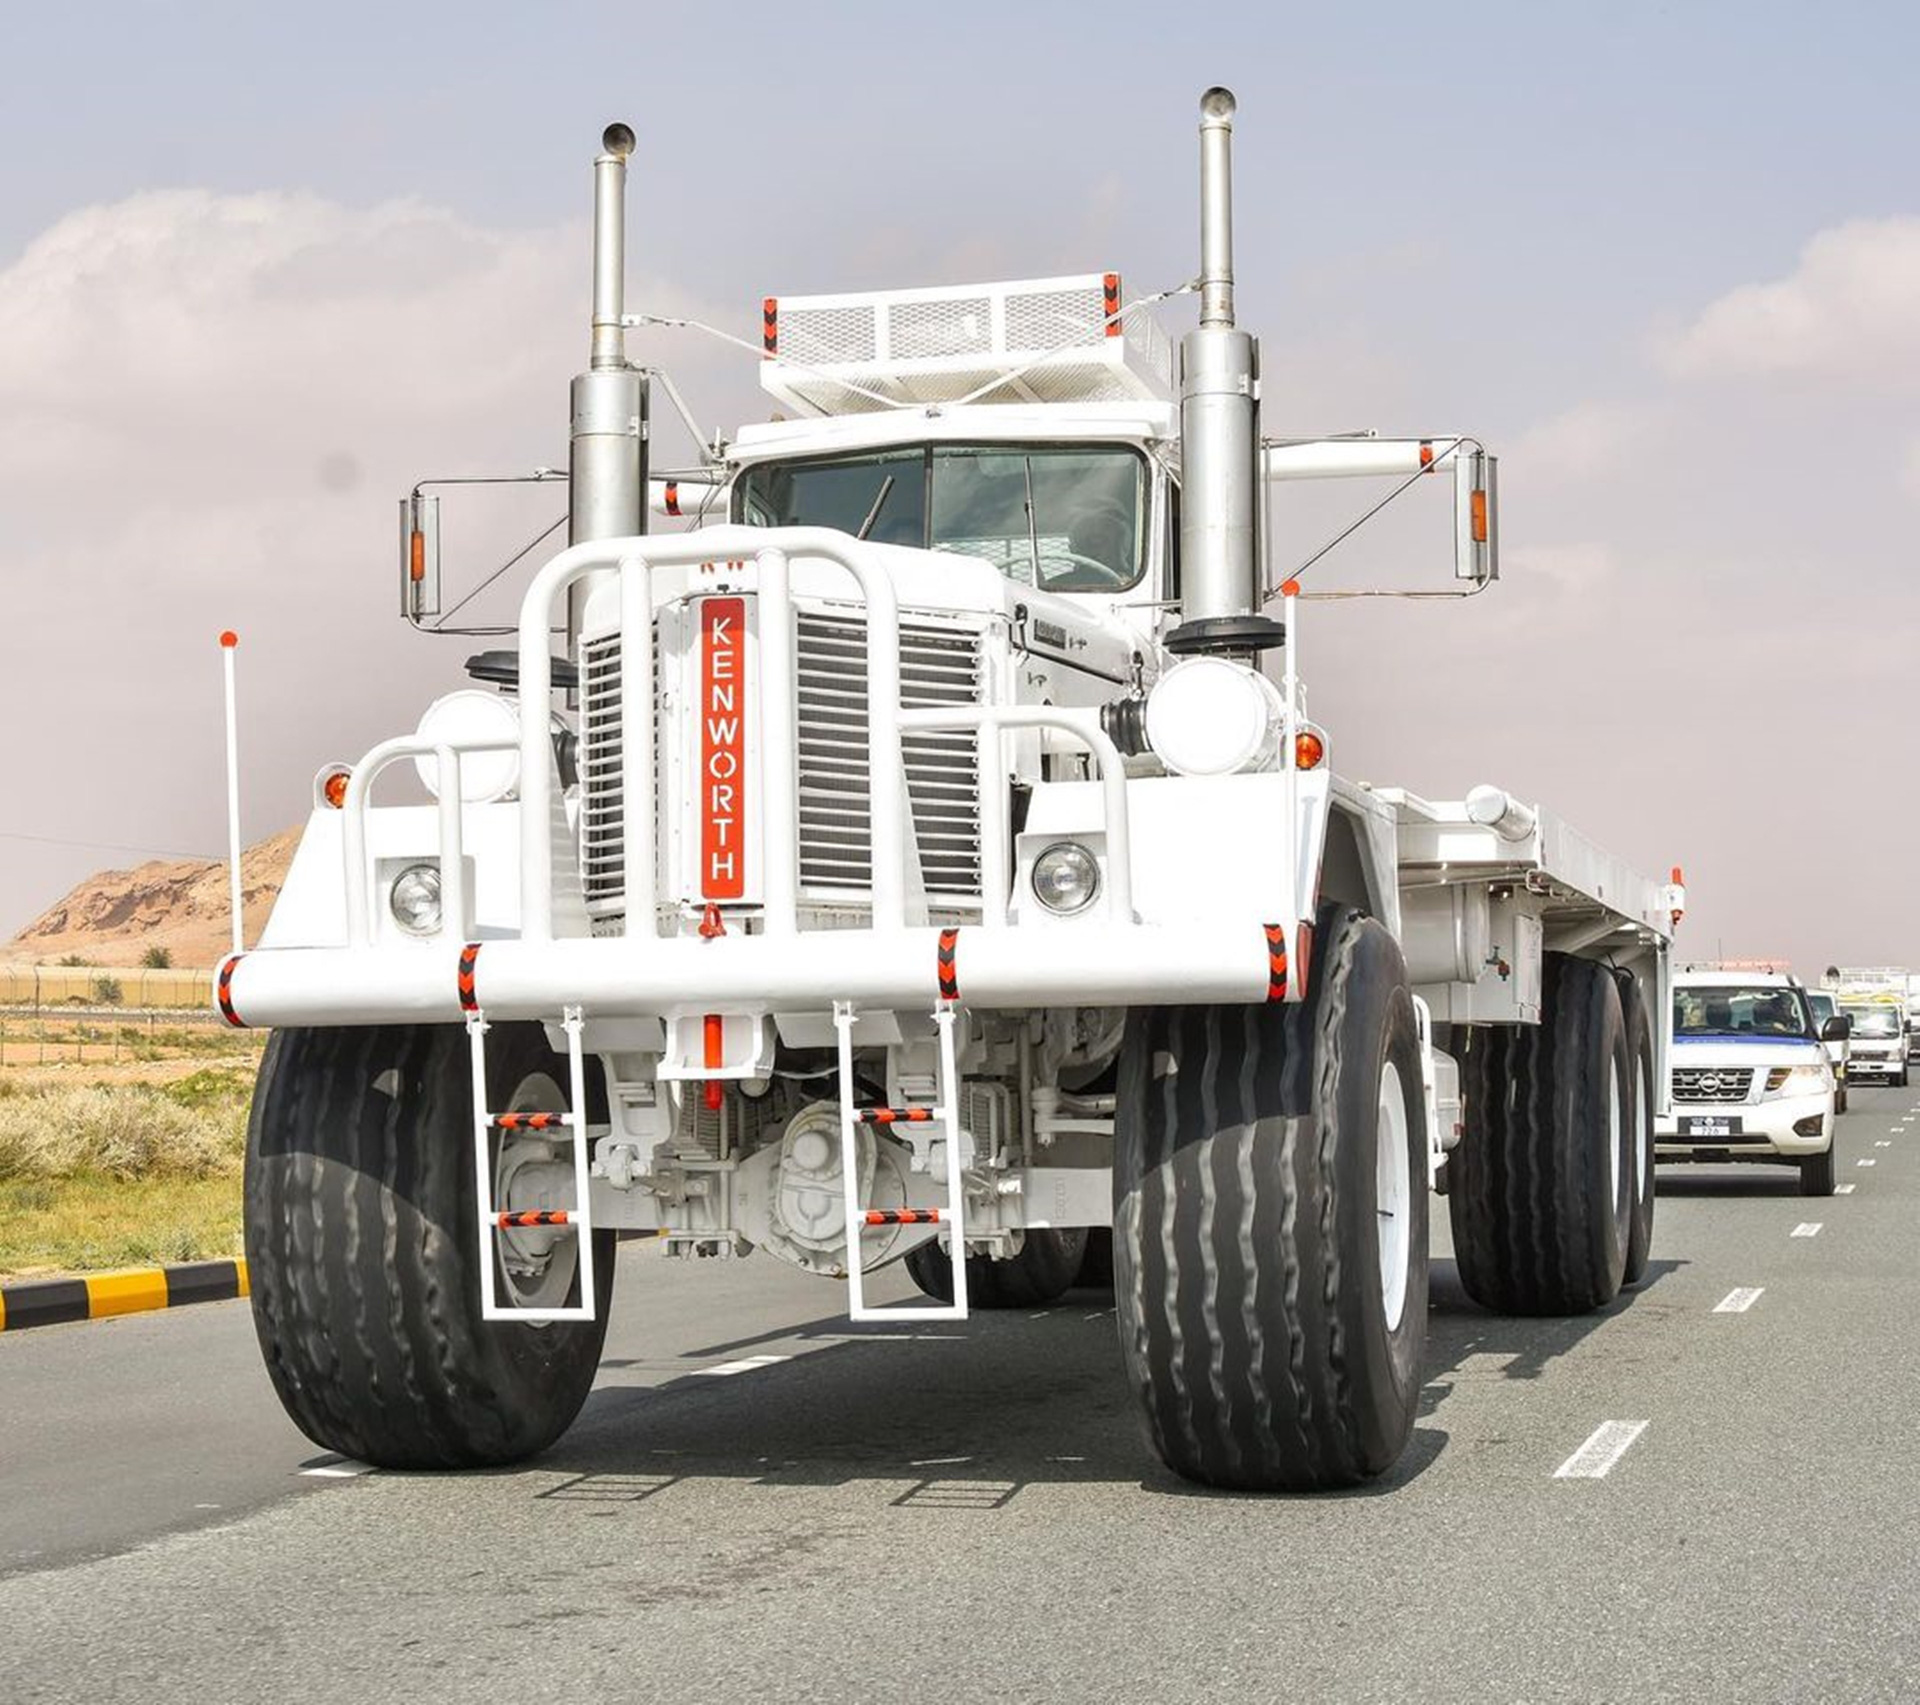 Xe tải khổng lồ của tỉ phú Trung Đông: Khỏe đến mức có thể kéo máy bay trên sa mạc dễ dàng - Ảnh 2.